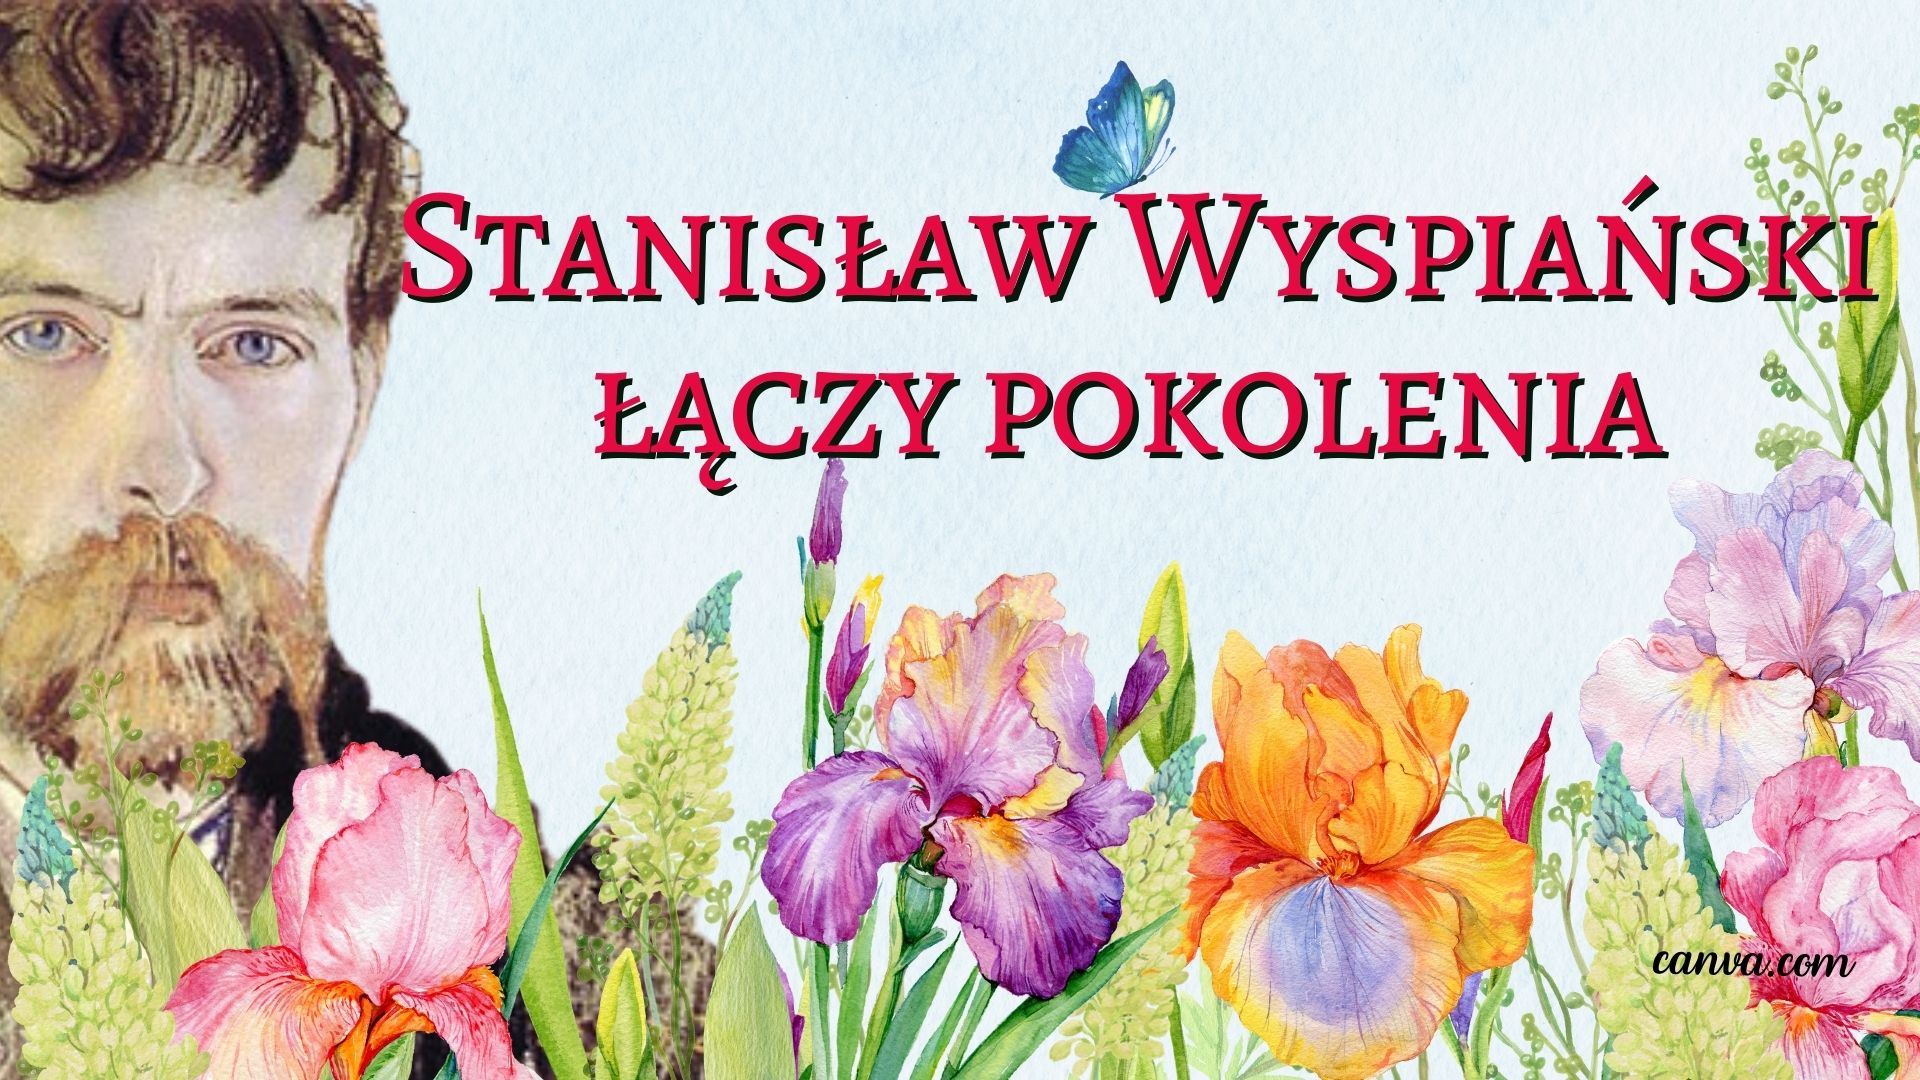 Stanisław Wyspiański łączy pokolenia